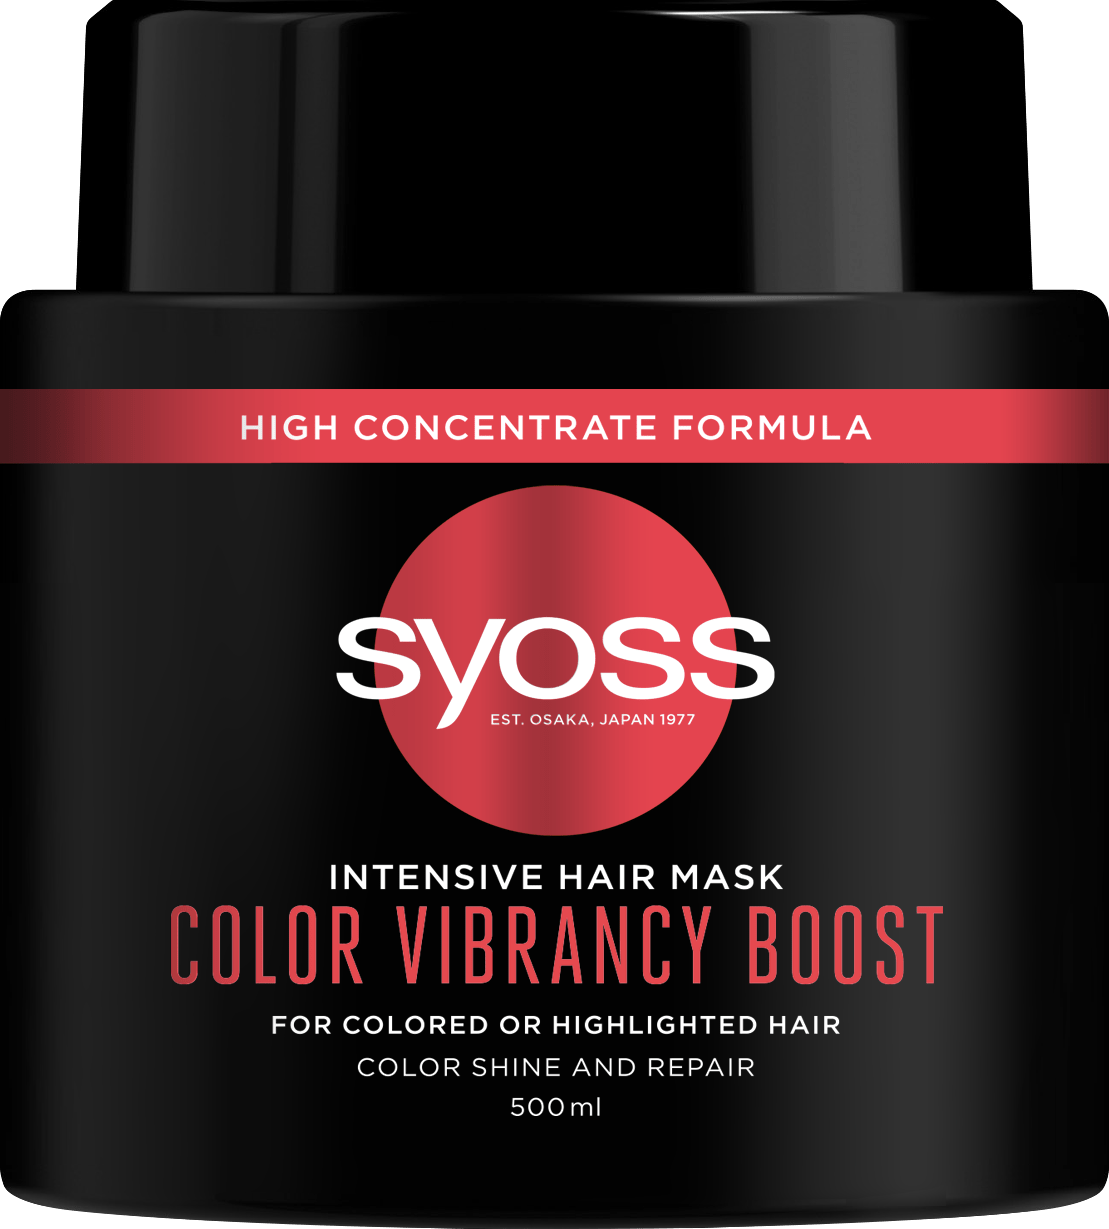 Интенсивная маска для волос SYOSS Color Vibrancy Boost 500 мл